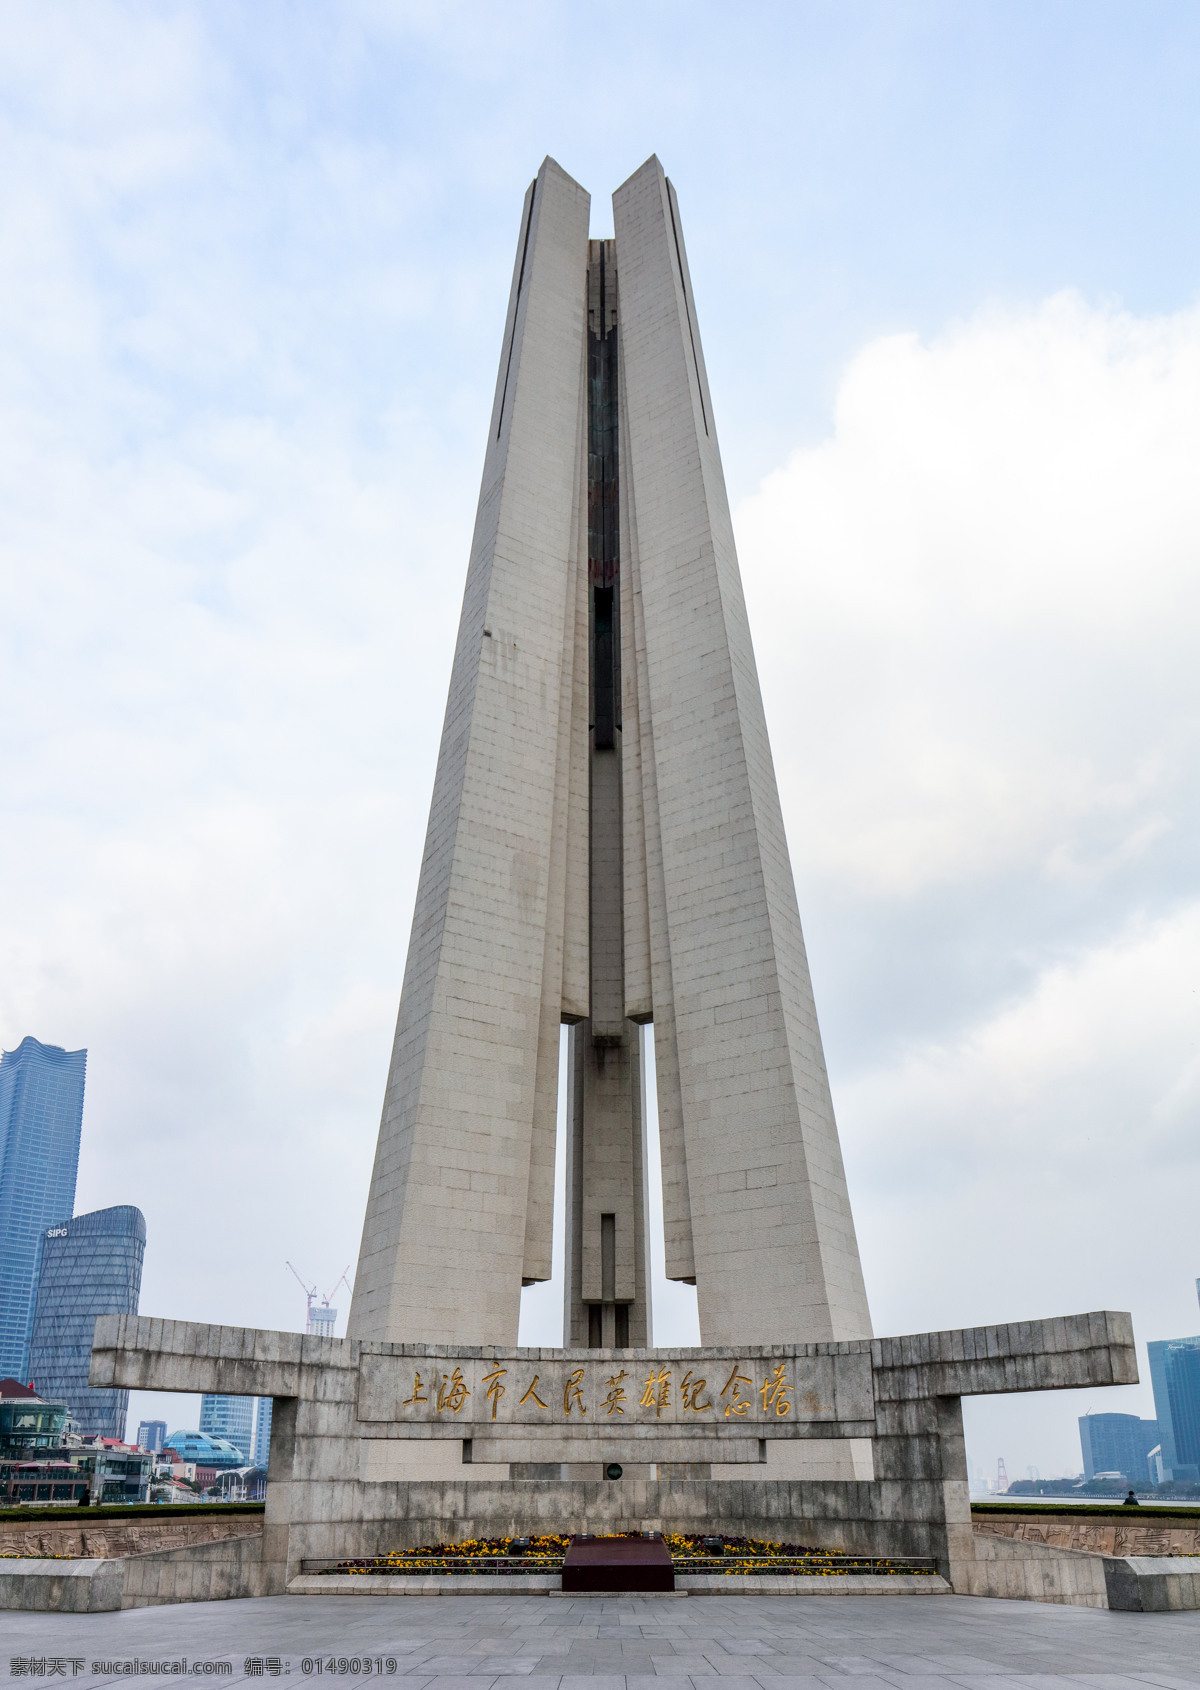 上海市 人民 英雄 纪念塔 上海 人民英雄 英雄纪念塔 竖图 上海旅游景点 建筑园林 建筑摄影